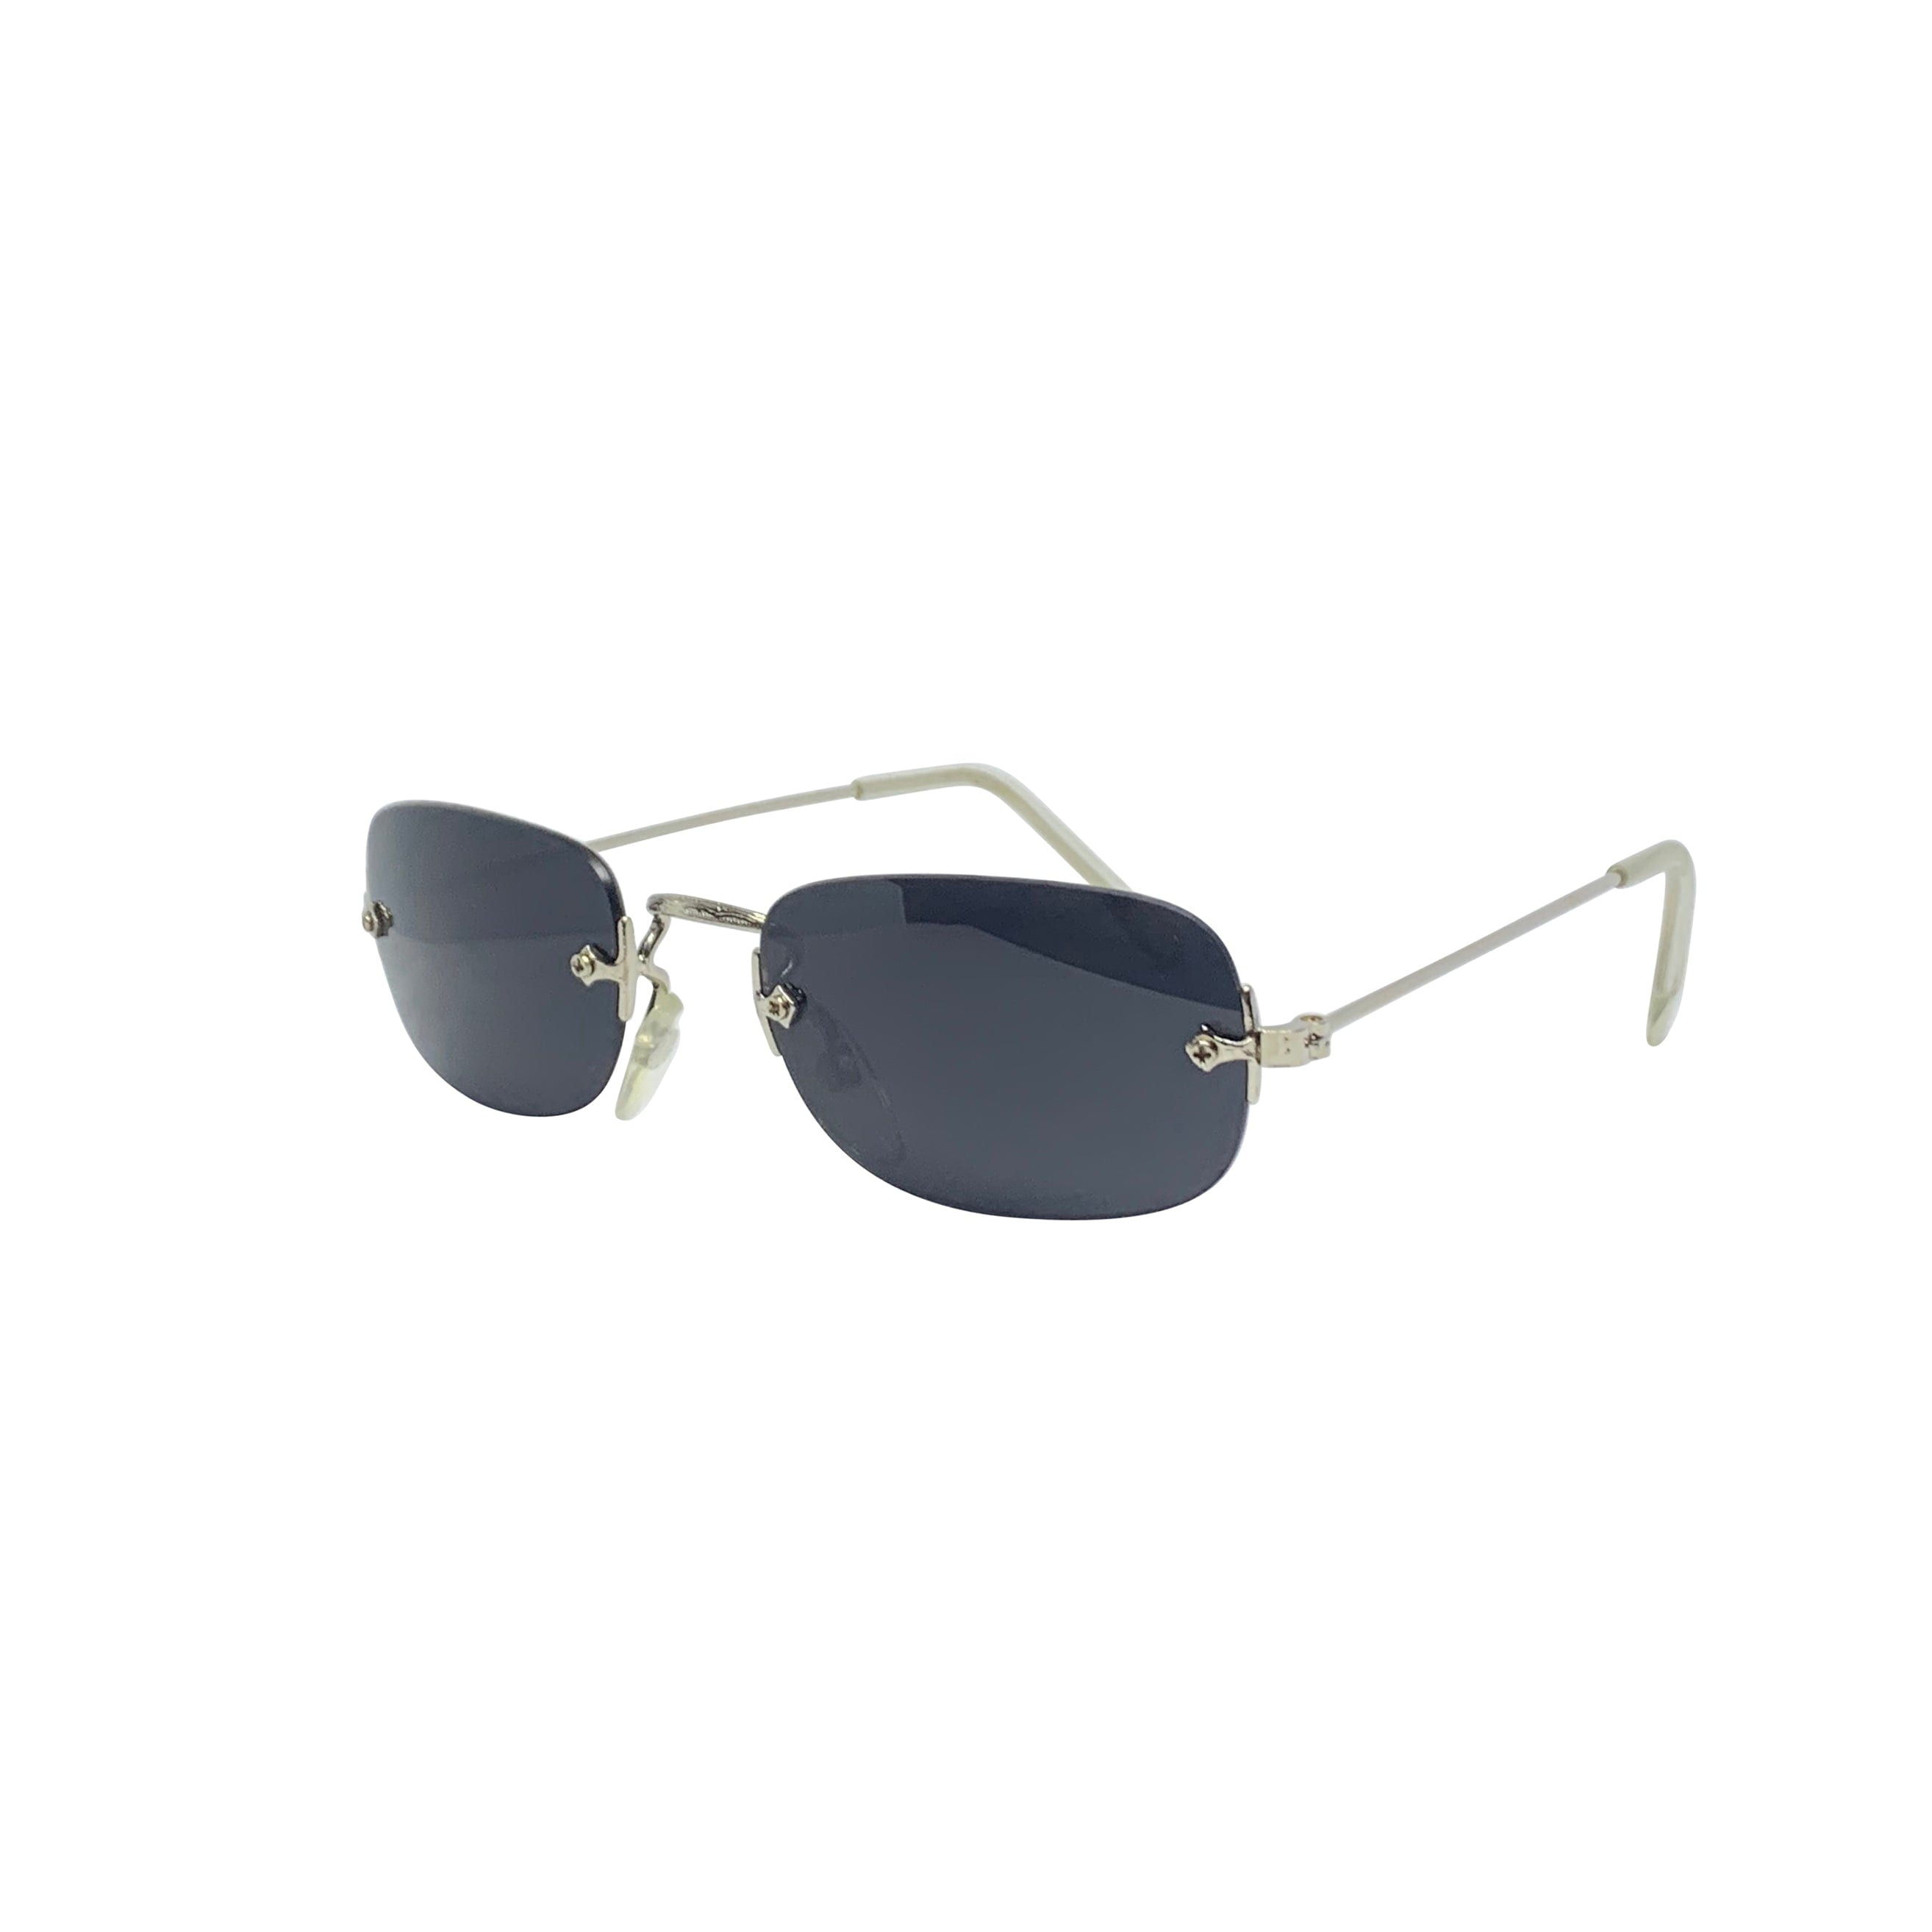 SOUP Rimless 90s Silver/Super Dark Sunglasses